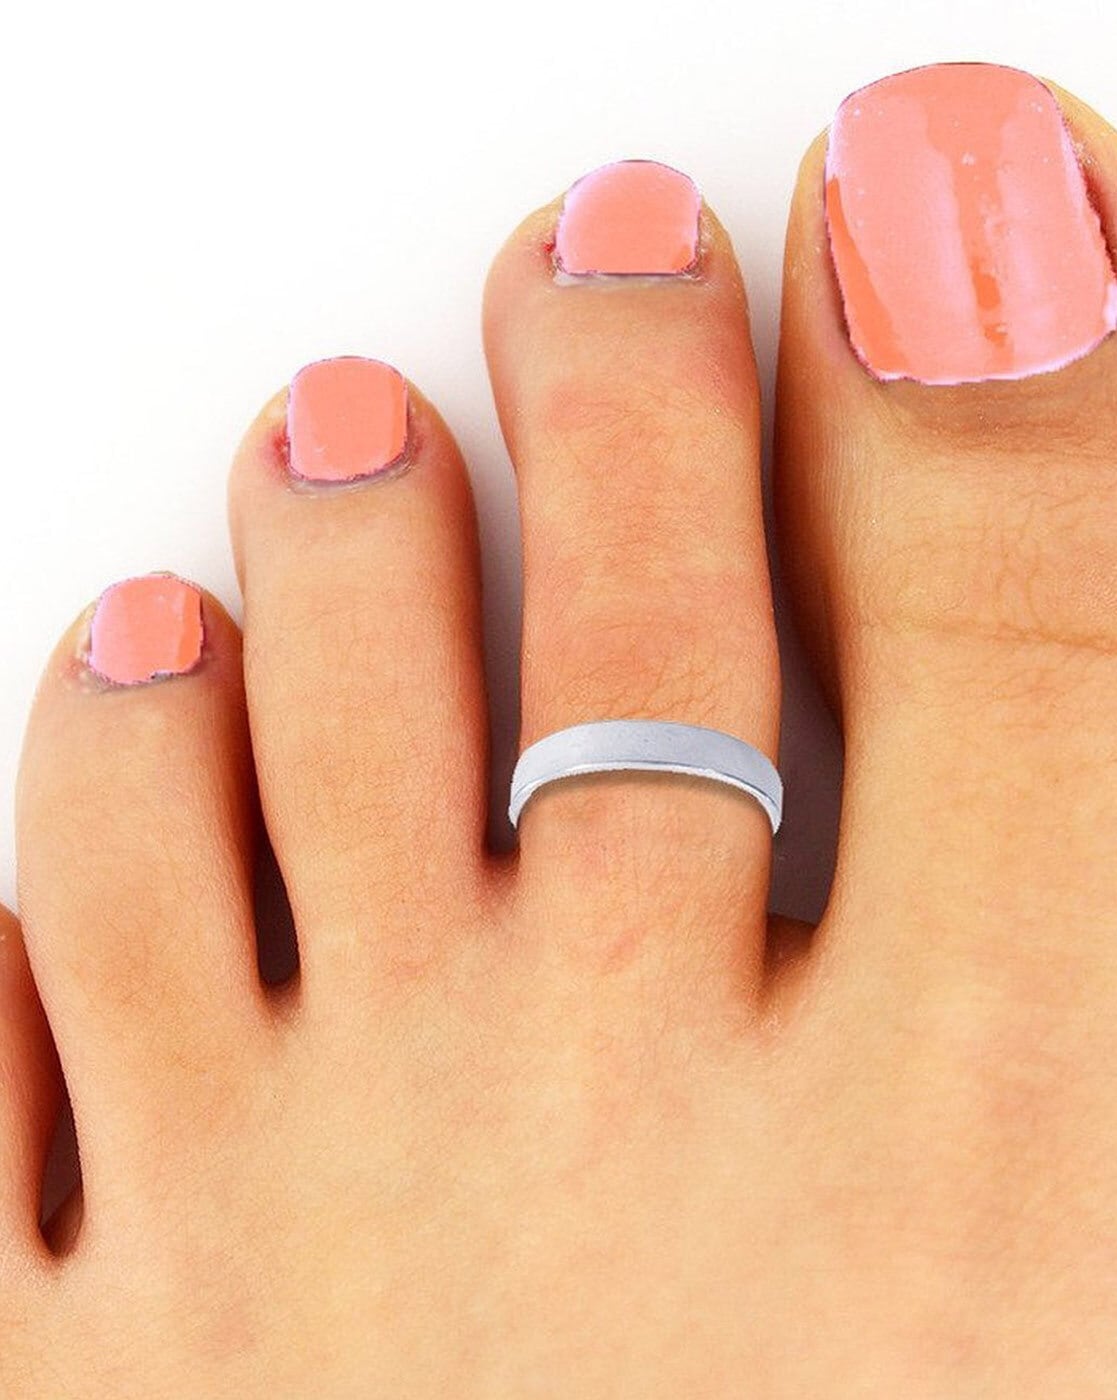 Order Leg finger rings 1 pair designed Online From Silver factorys,Narsapur